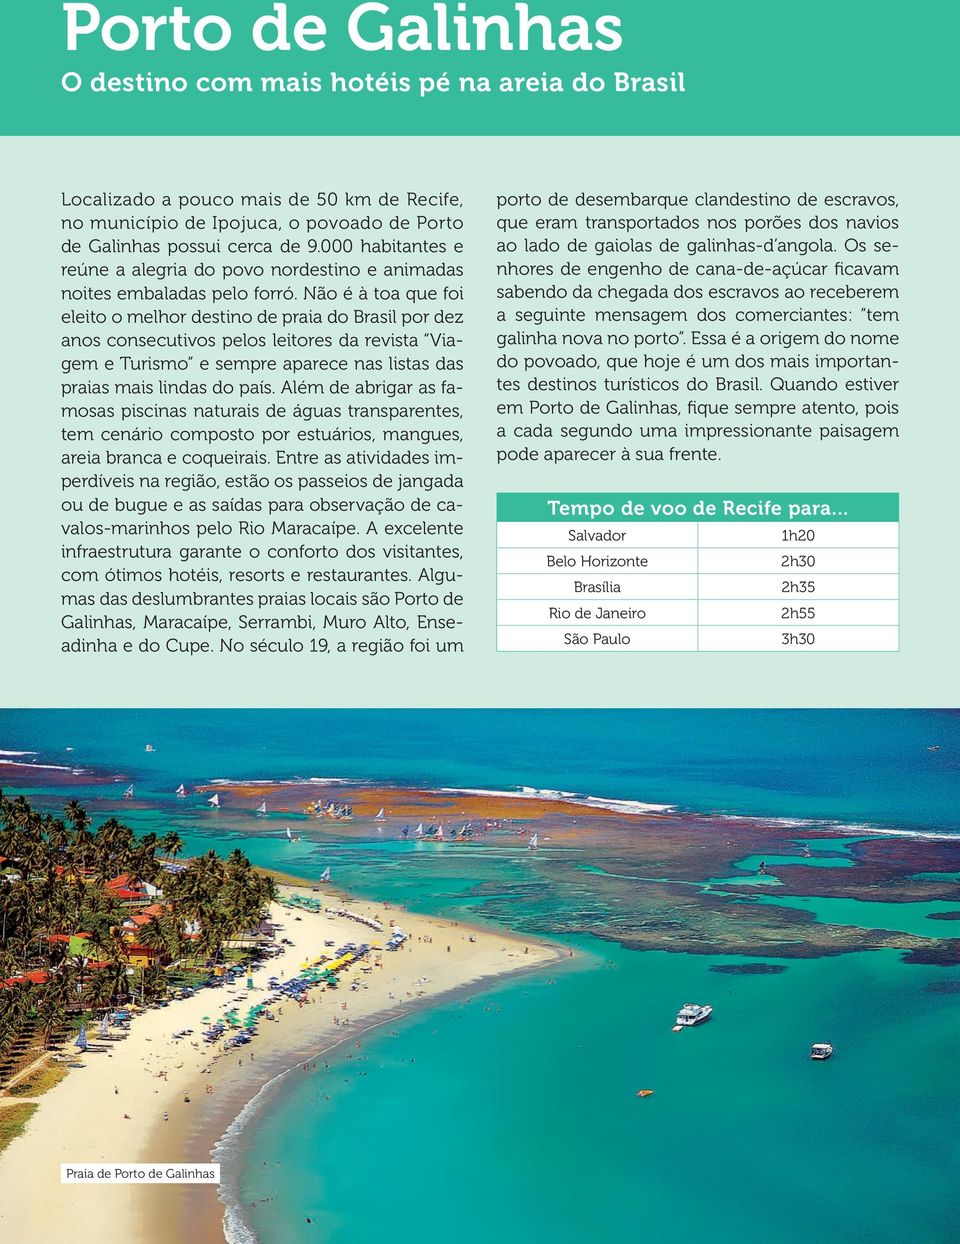 Não é à toa que foi eleito o melhor destino de praia do Brasil por dez anos consecutivos pelos leitores da revista Viagem e Turismo e sempre aparece nas listas das praias mais lindas do país.